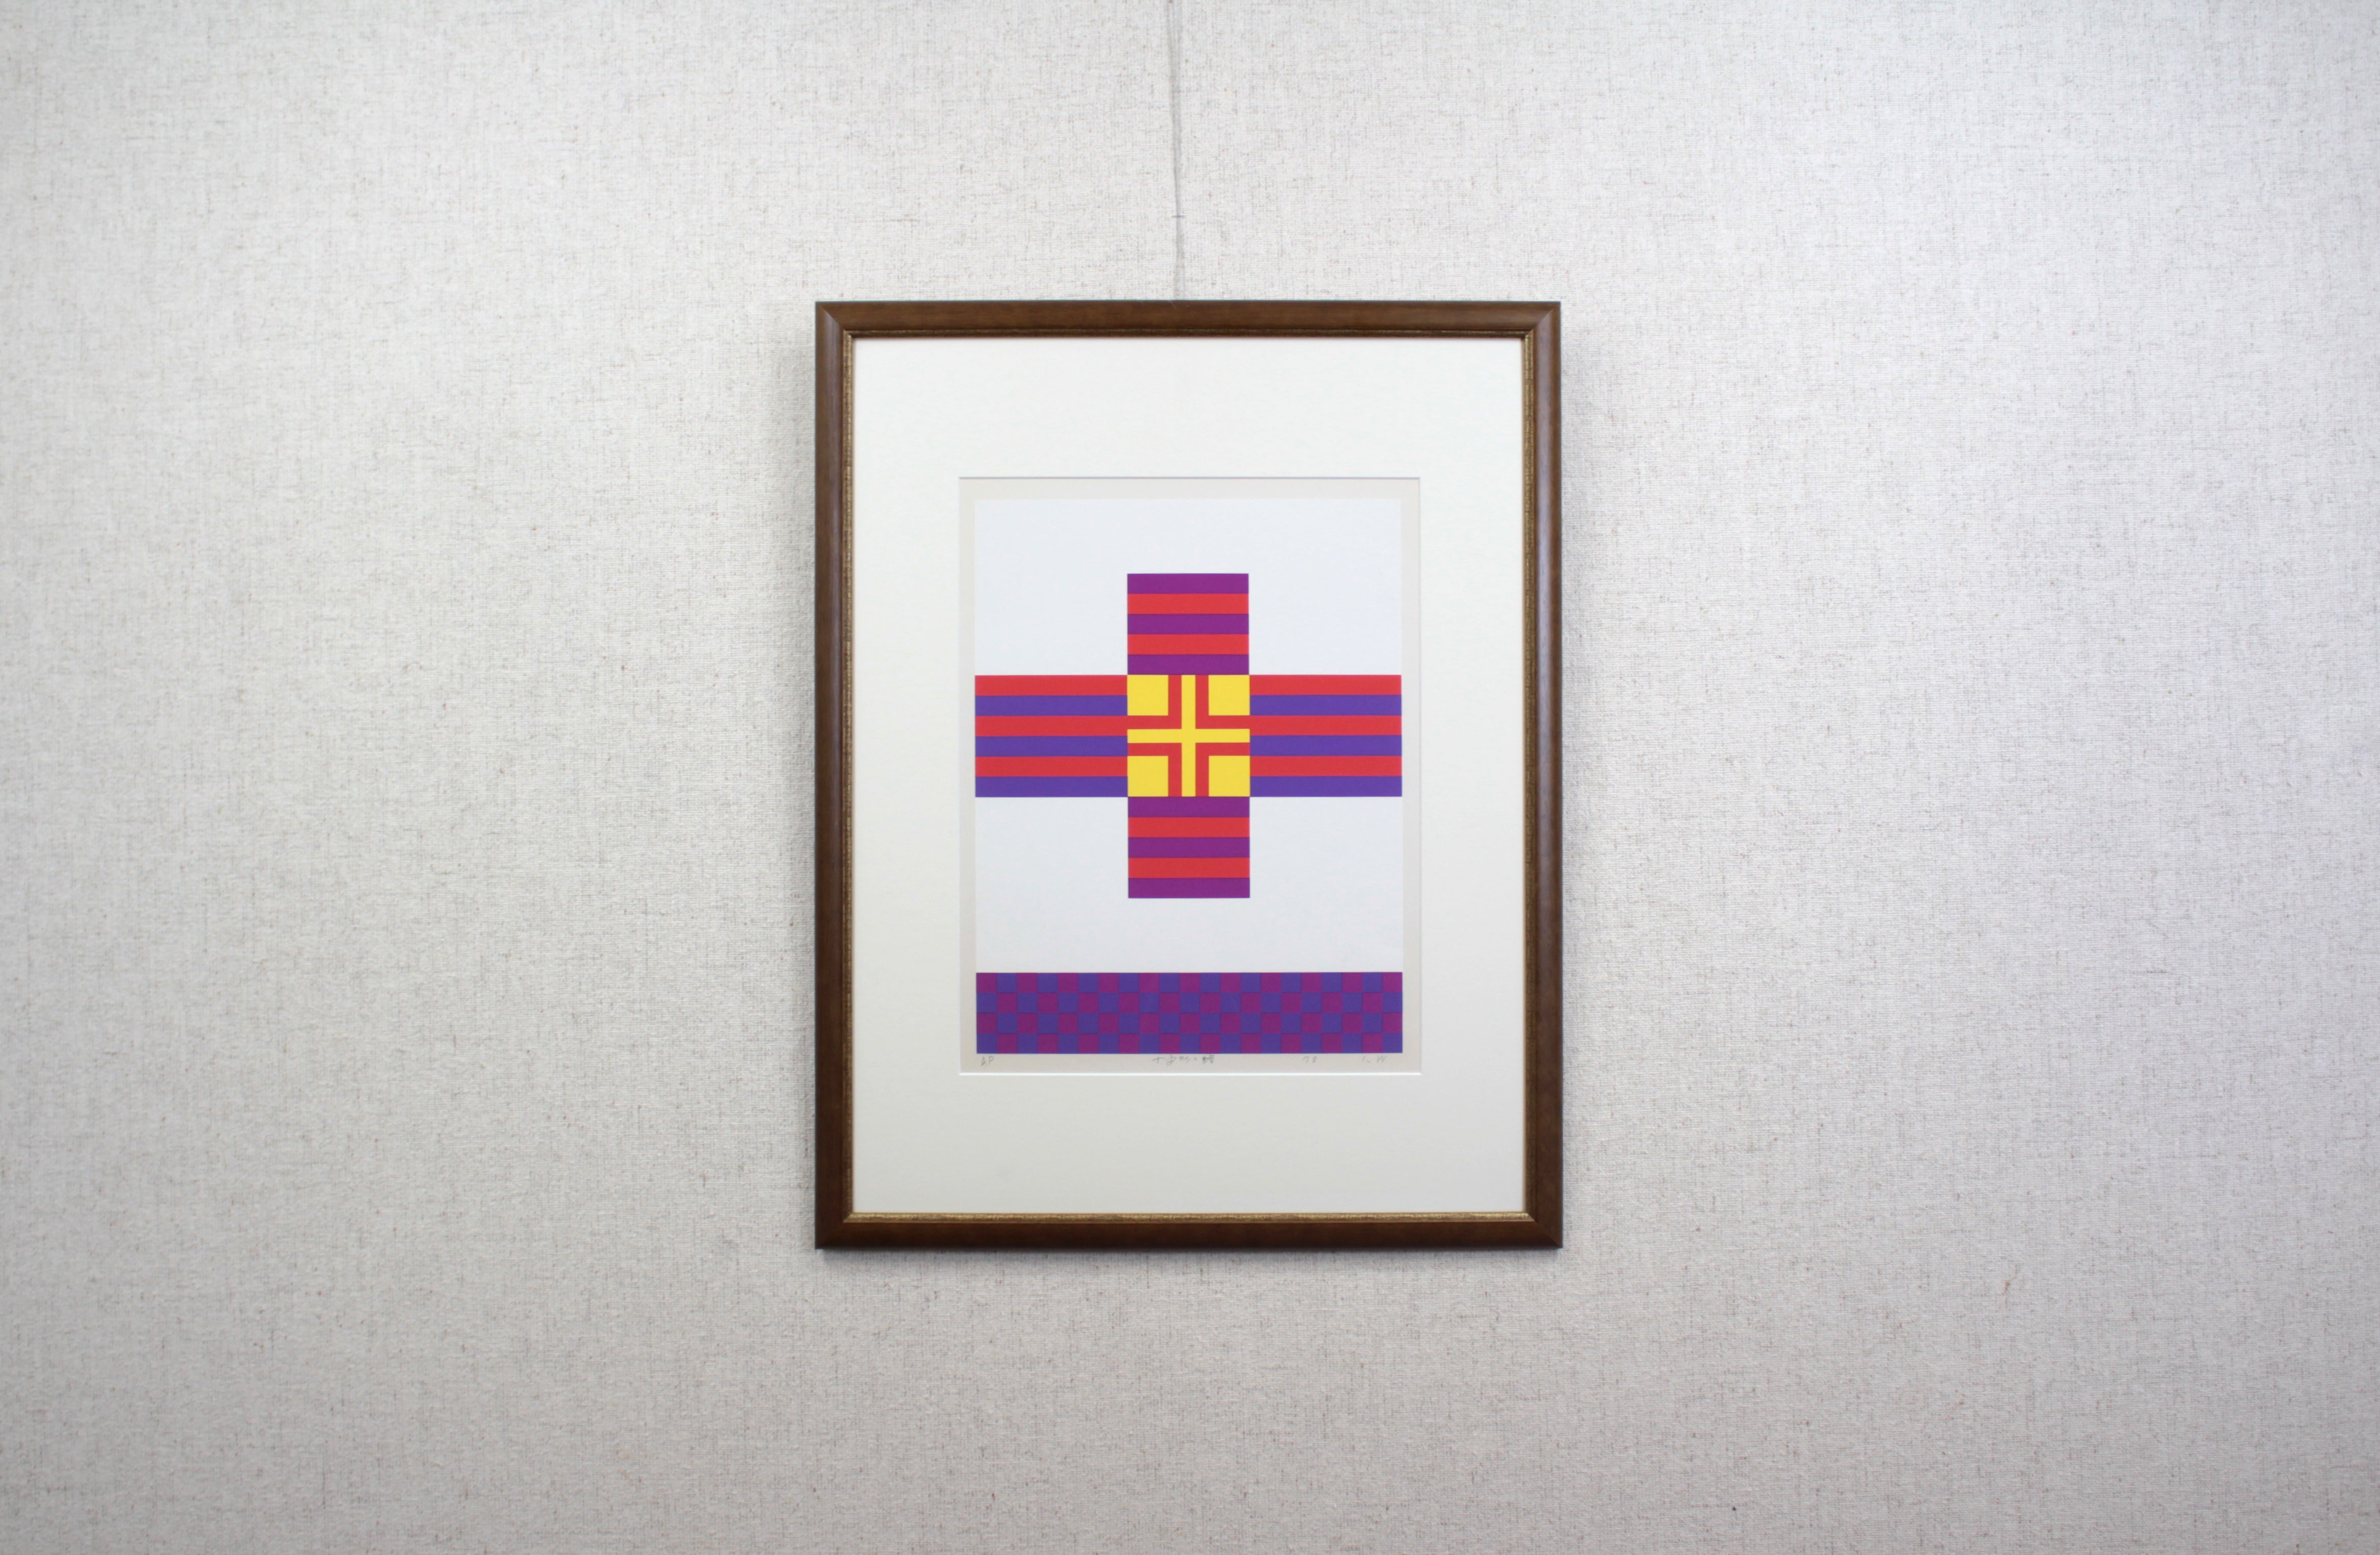 渡辺伊八郎 『十字形の繪』 シルクスクリーン - 北海道画廊